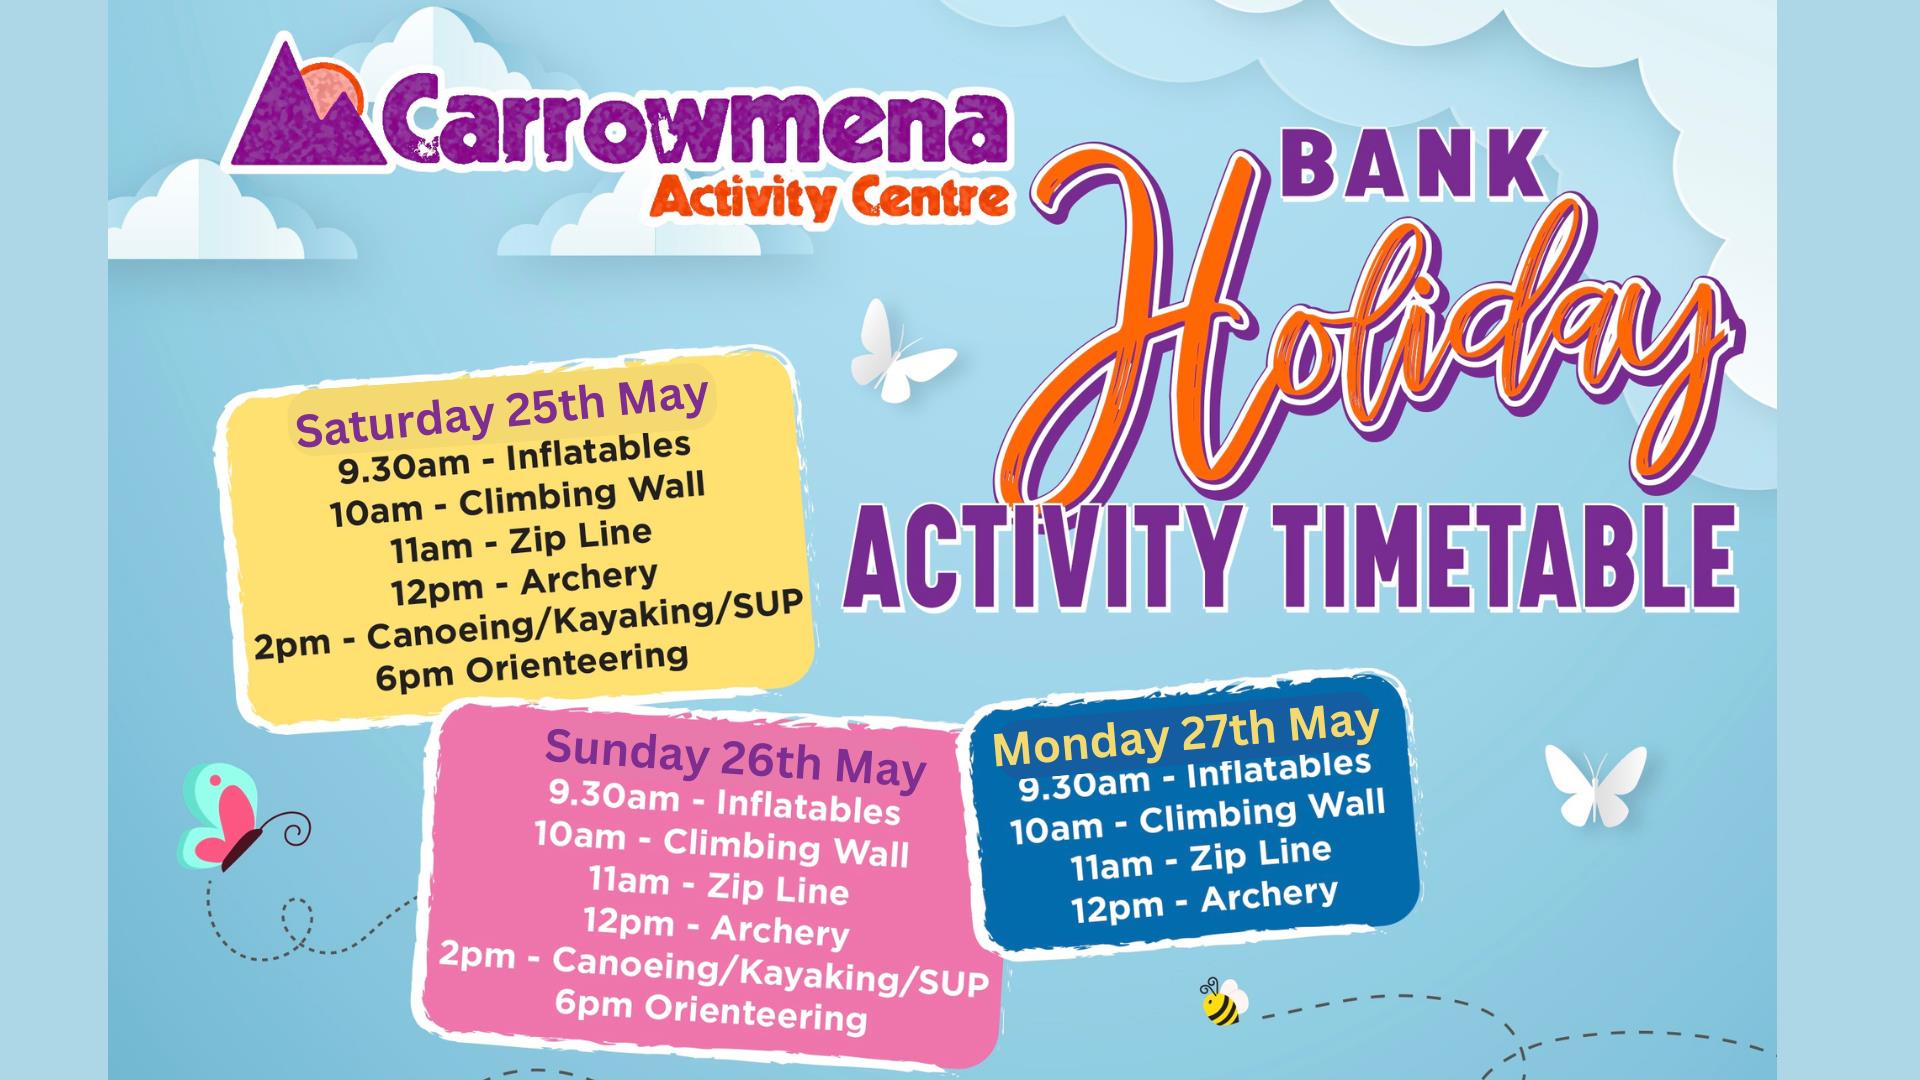 End of May Bank Holiday Extravaganza at Carrowmena